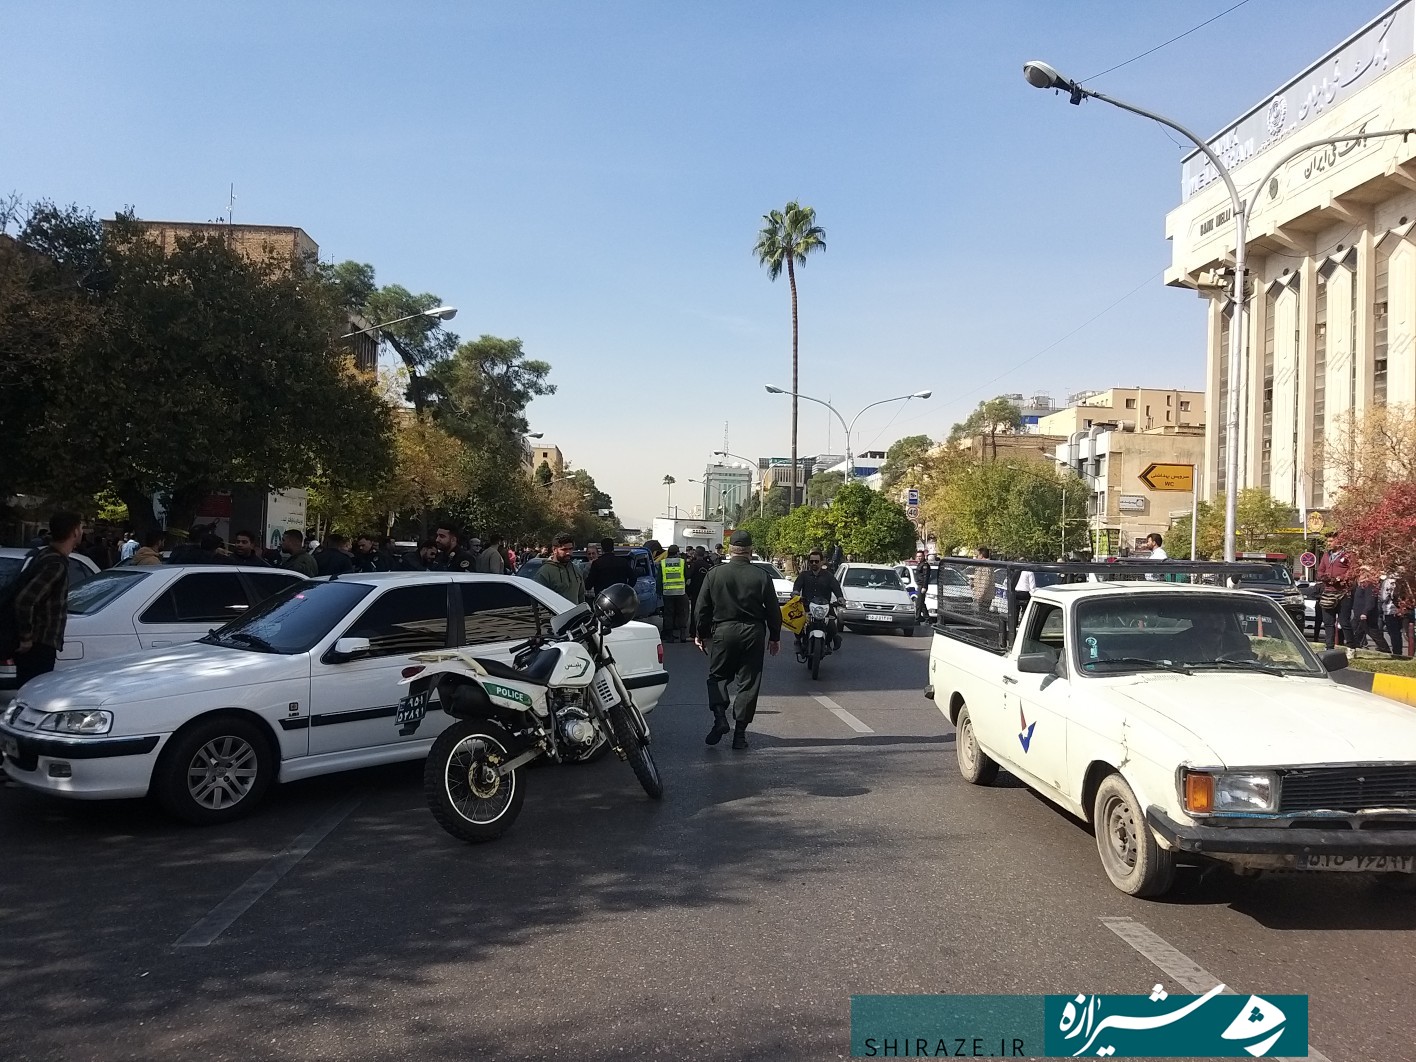 تیراندازی مسلحانه در چهار راه زند شیراز